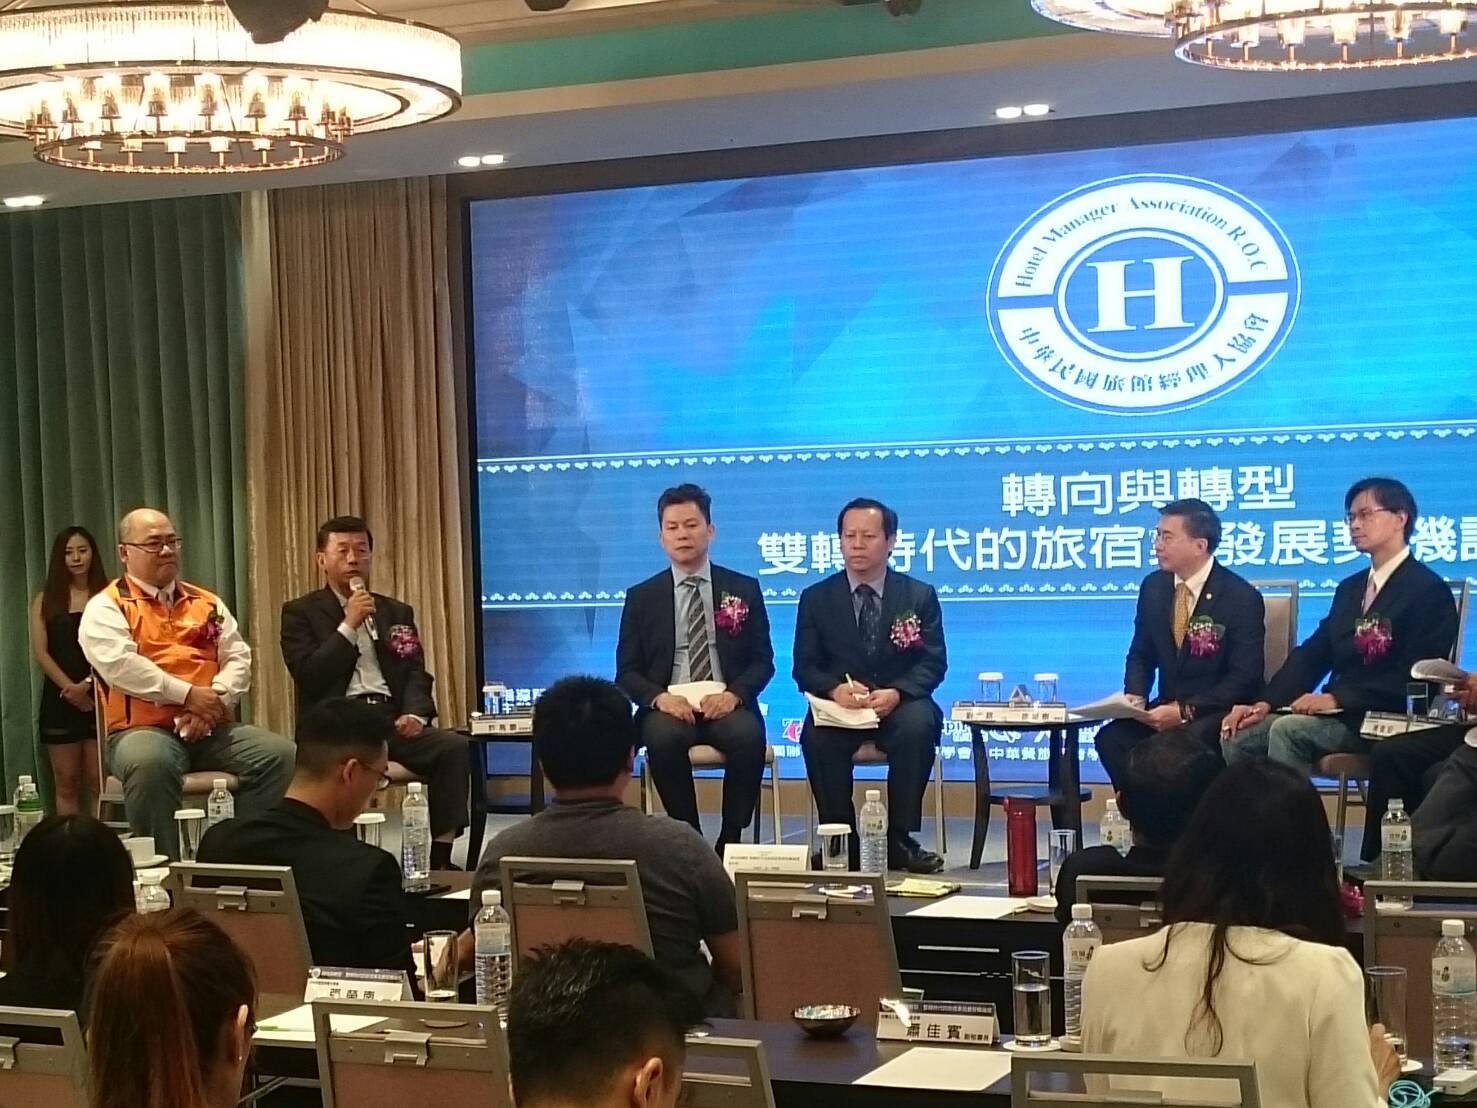 旅館領袖及臺灣觀光產學業代表進行主題論壇